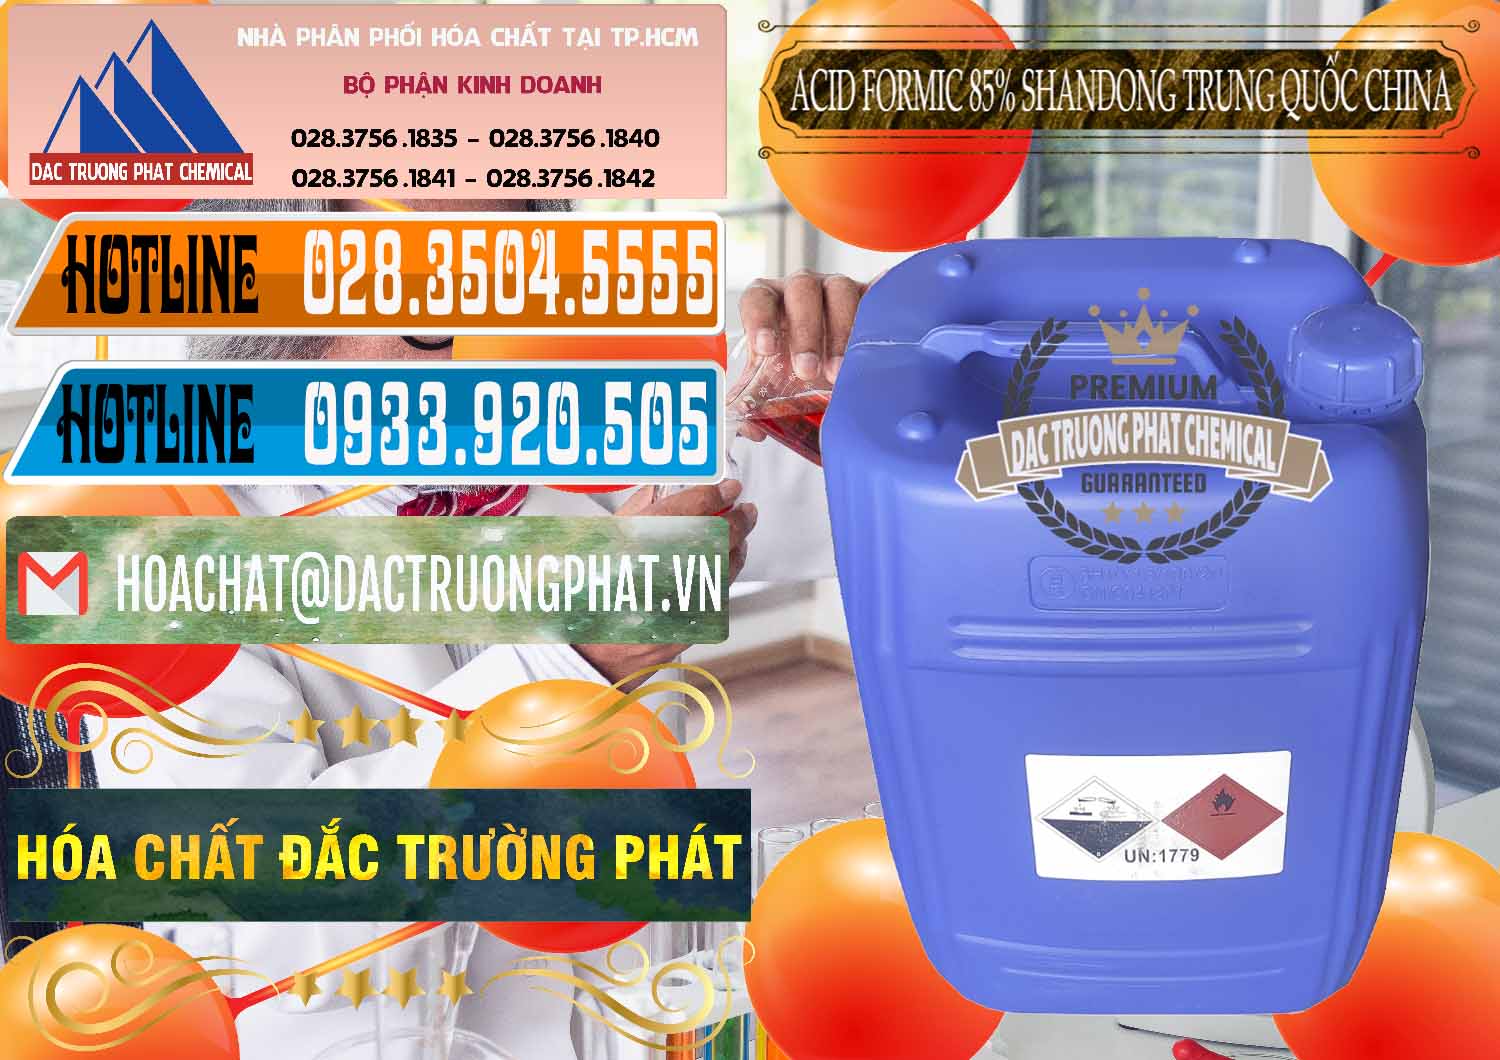 Công ty bán - cung cấp Acid Formic - Axit Formic 85% Shandong Trung Quốc China - 0235 - Cty phân phối _ bán hóa chất tại TP.HCM - stmp.net